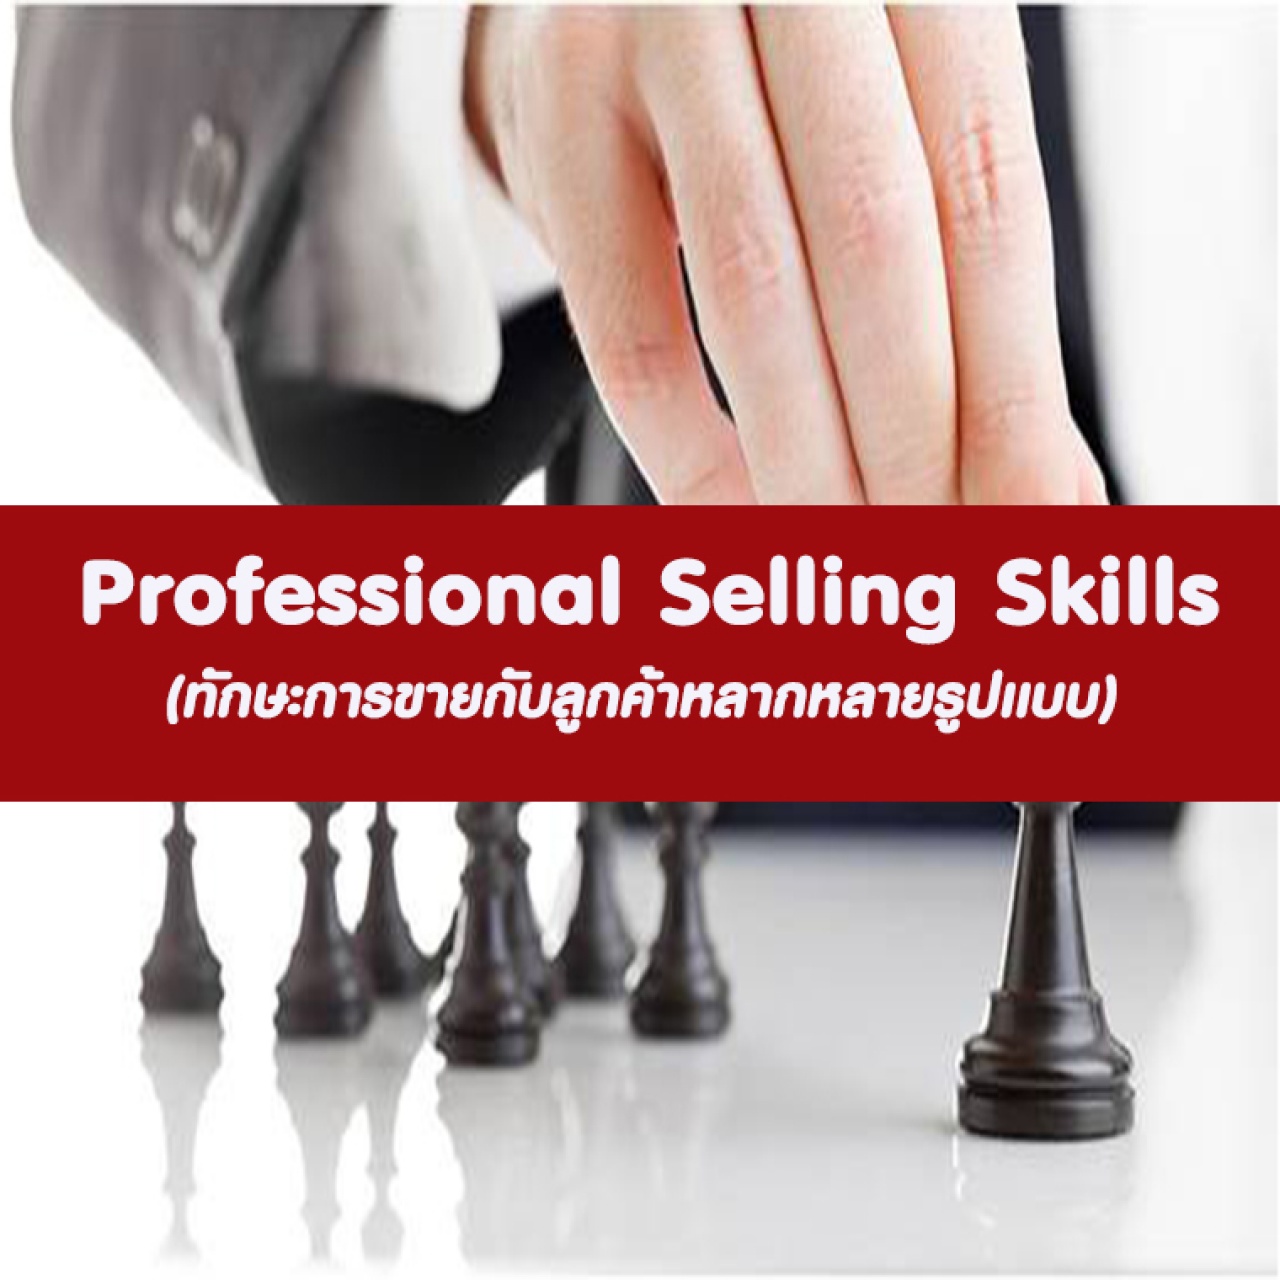 หลักสูตร Professional Selling Skills 